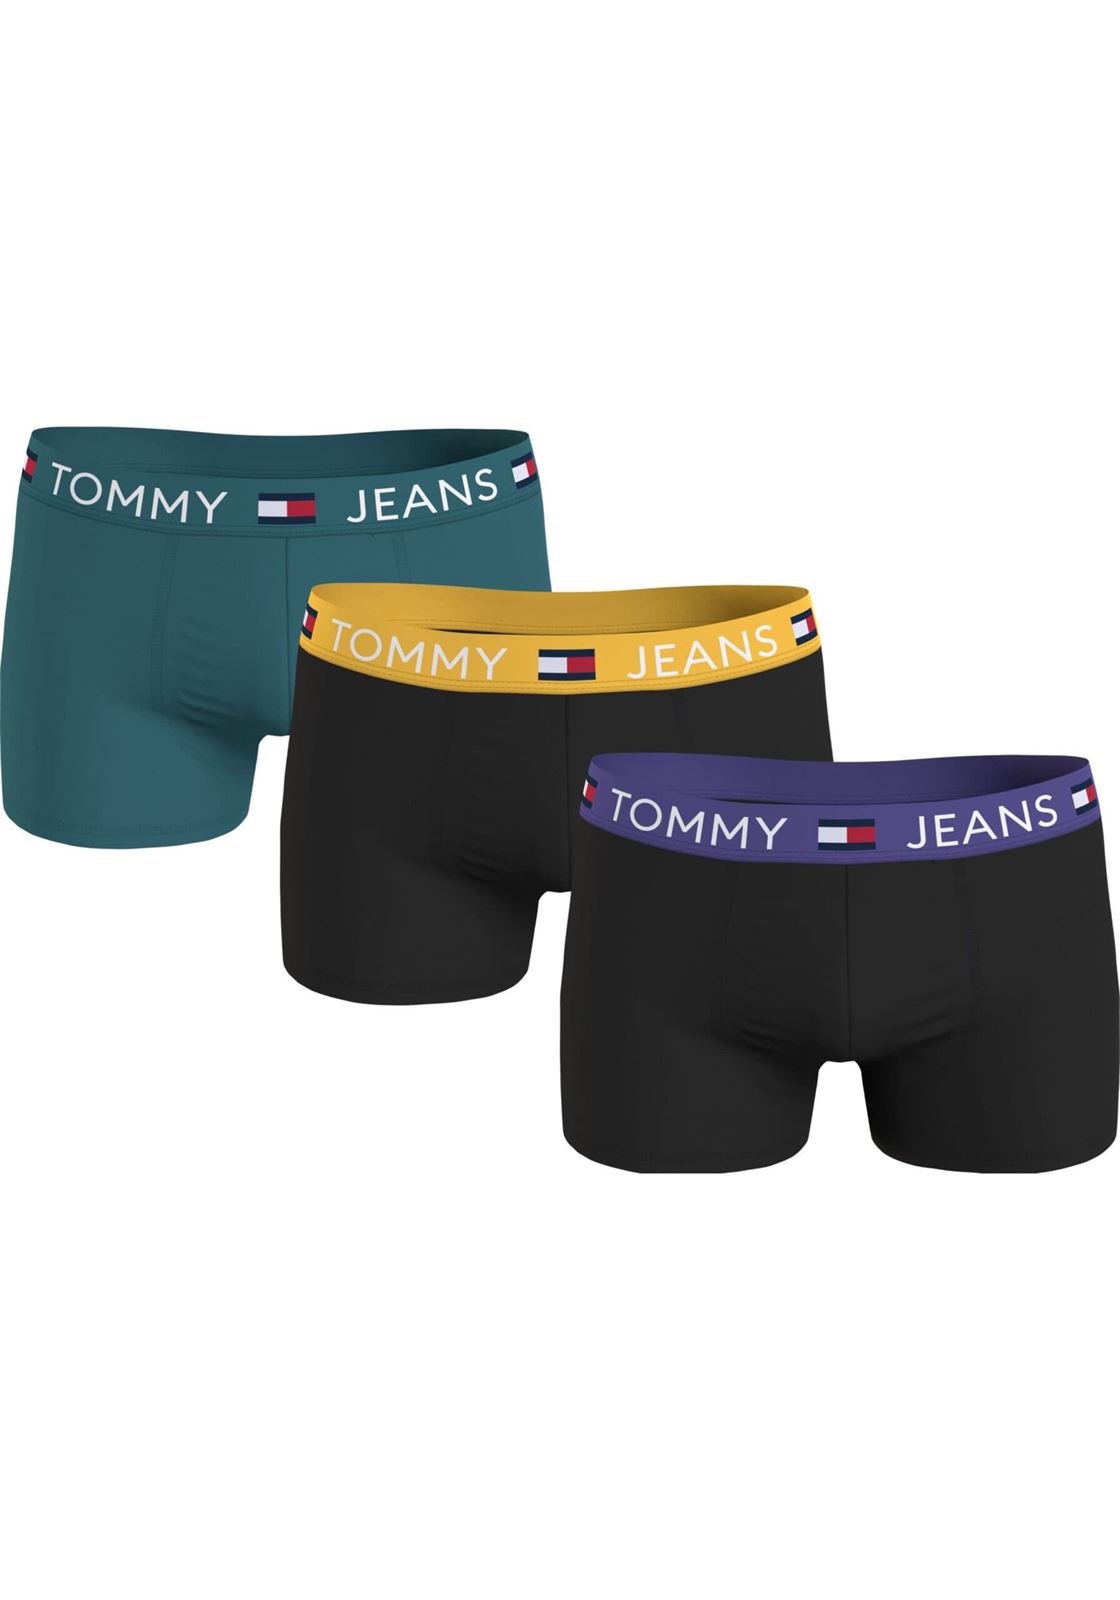 Pack 3 boxer Tommy Jeans UM0UM03290 0V8 tmlss teal/blk/blck - Imagen 1